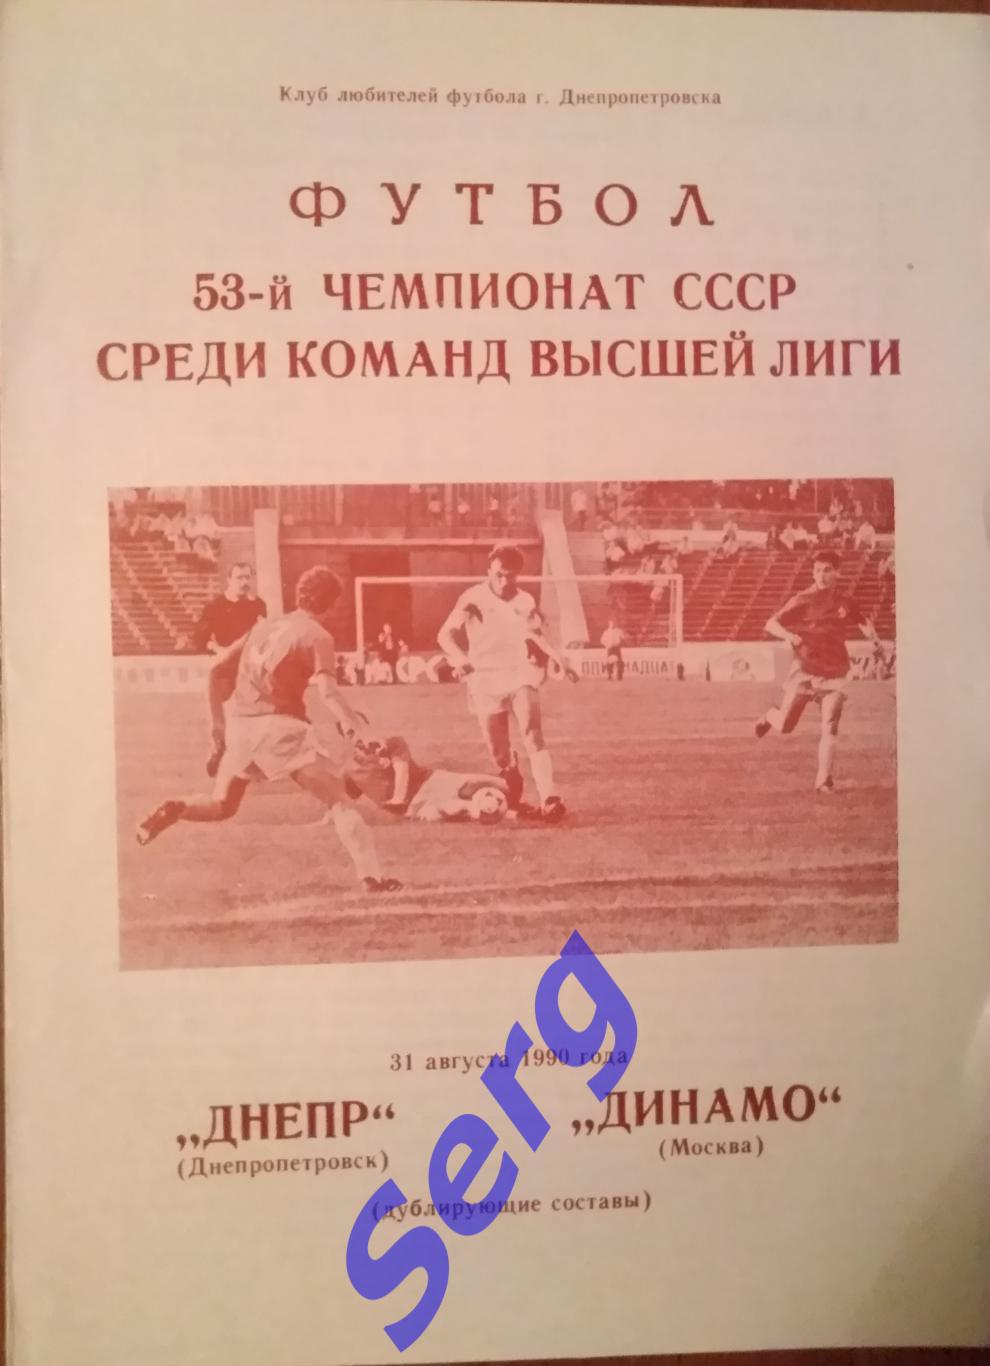 Днепр Днепропетровск - Динамо Москва - 31 августа 1990 год. Дублеры